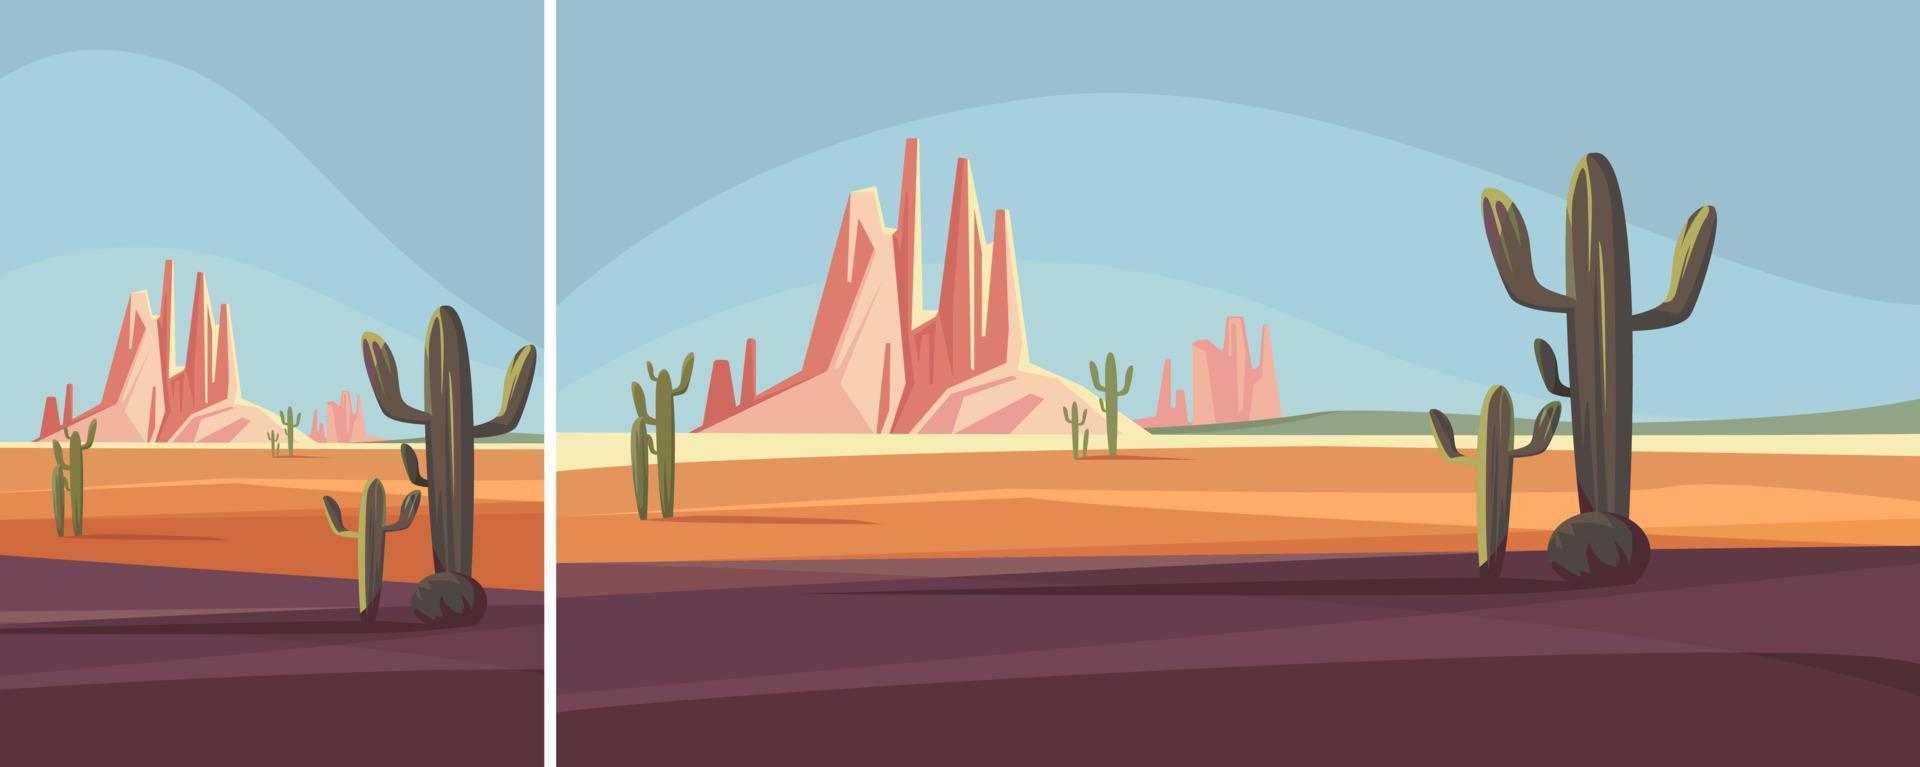 paesaggio del deserto dell'arizona. scenario naturale in diversi formati. vettore